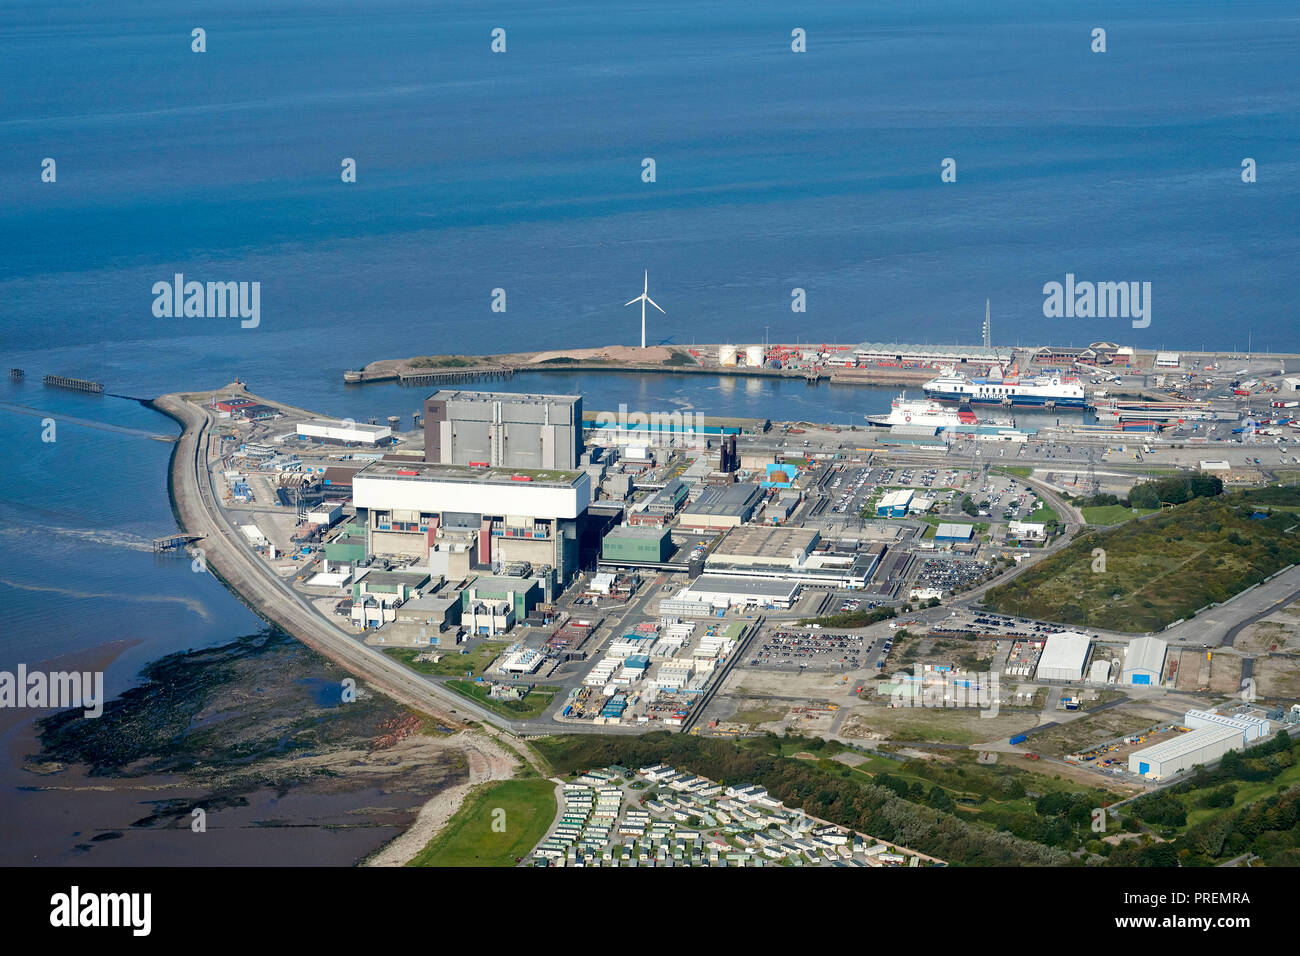 Ein Luftbild von Heysham Hafen, North West England, Großbritannien, am Rande der Morecambe Bay, Insel Man Fähre im Hafen, Kernkraftwerk Prominente Stockfoto